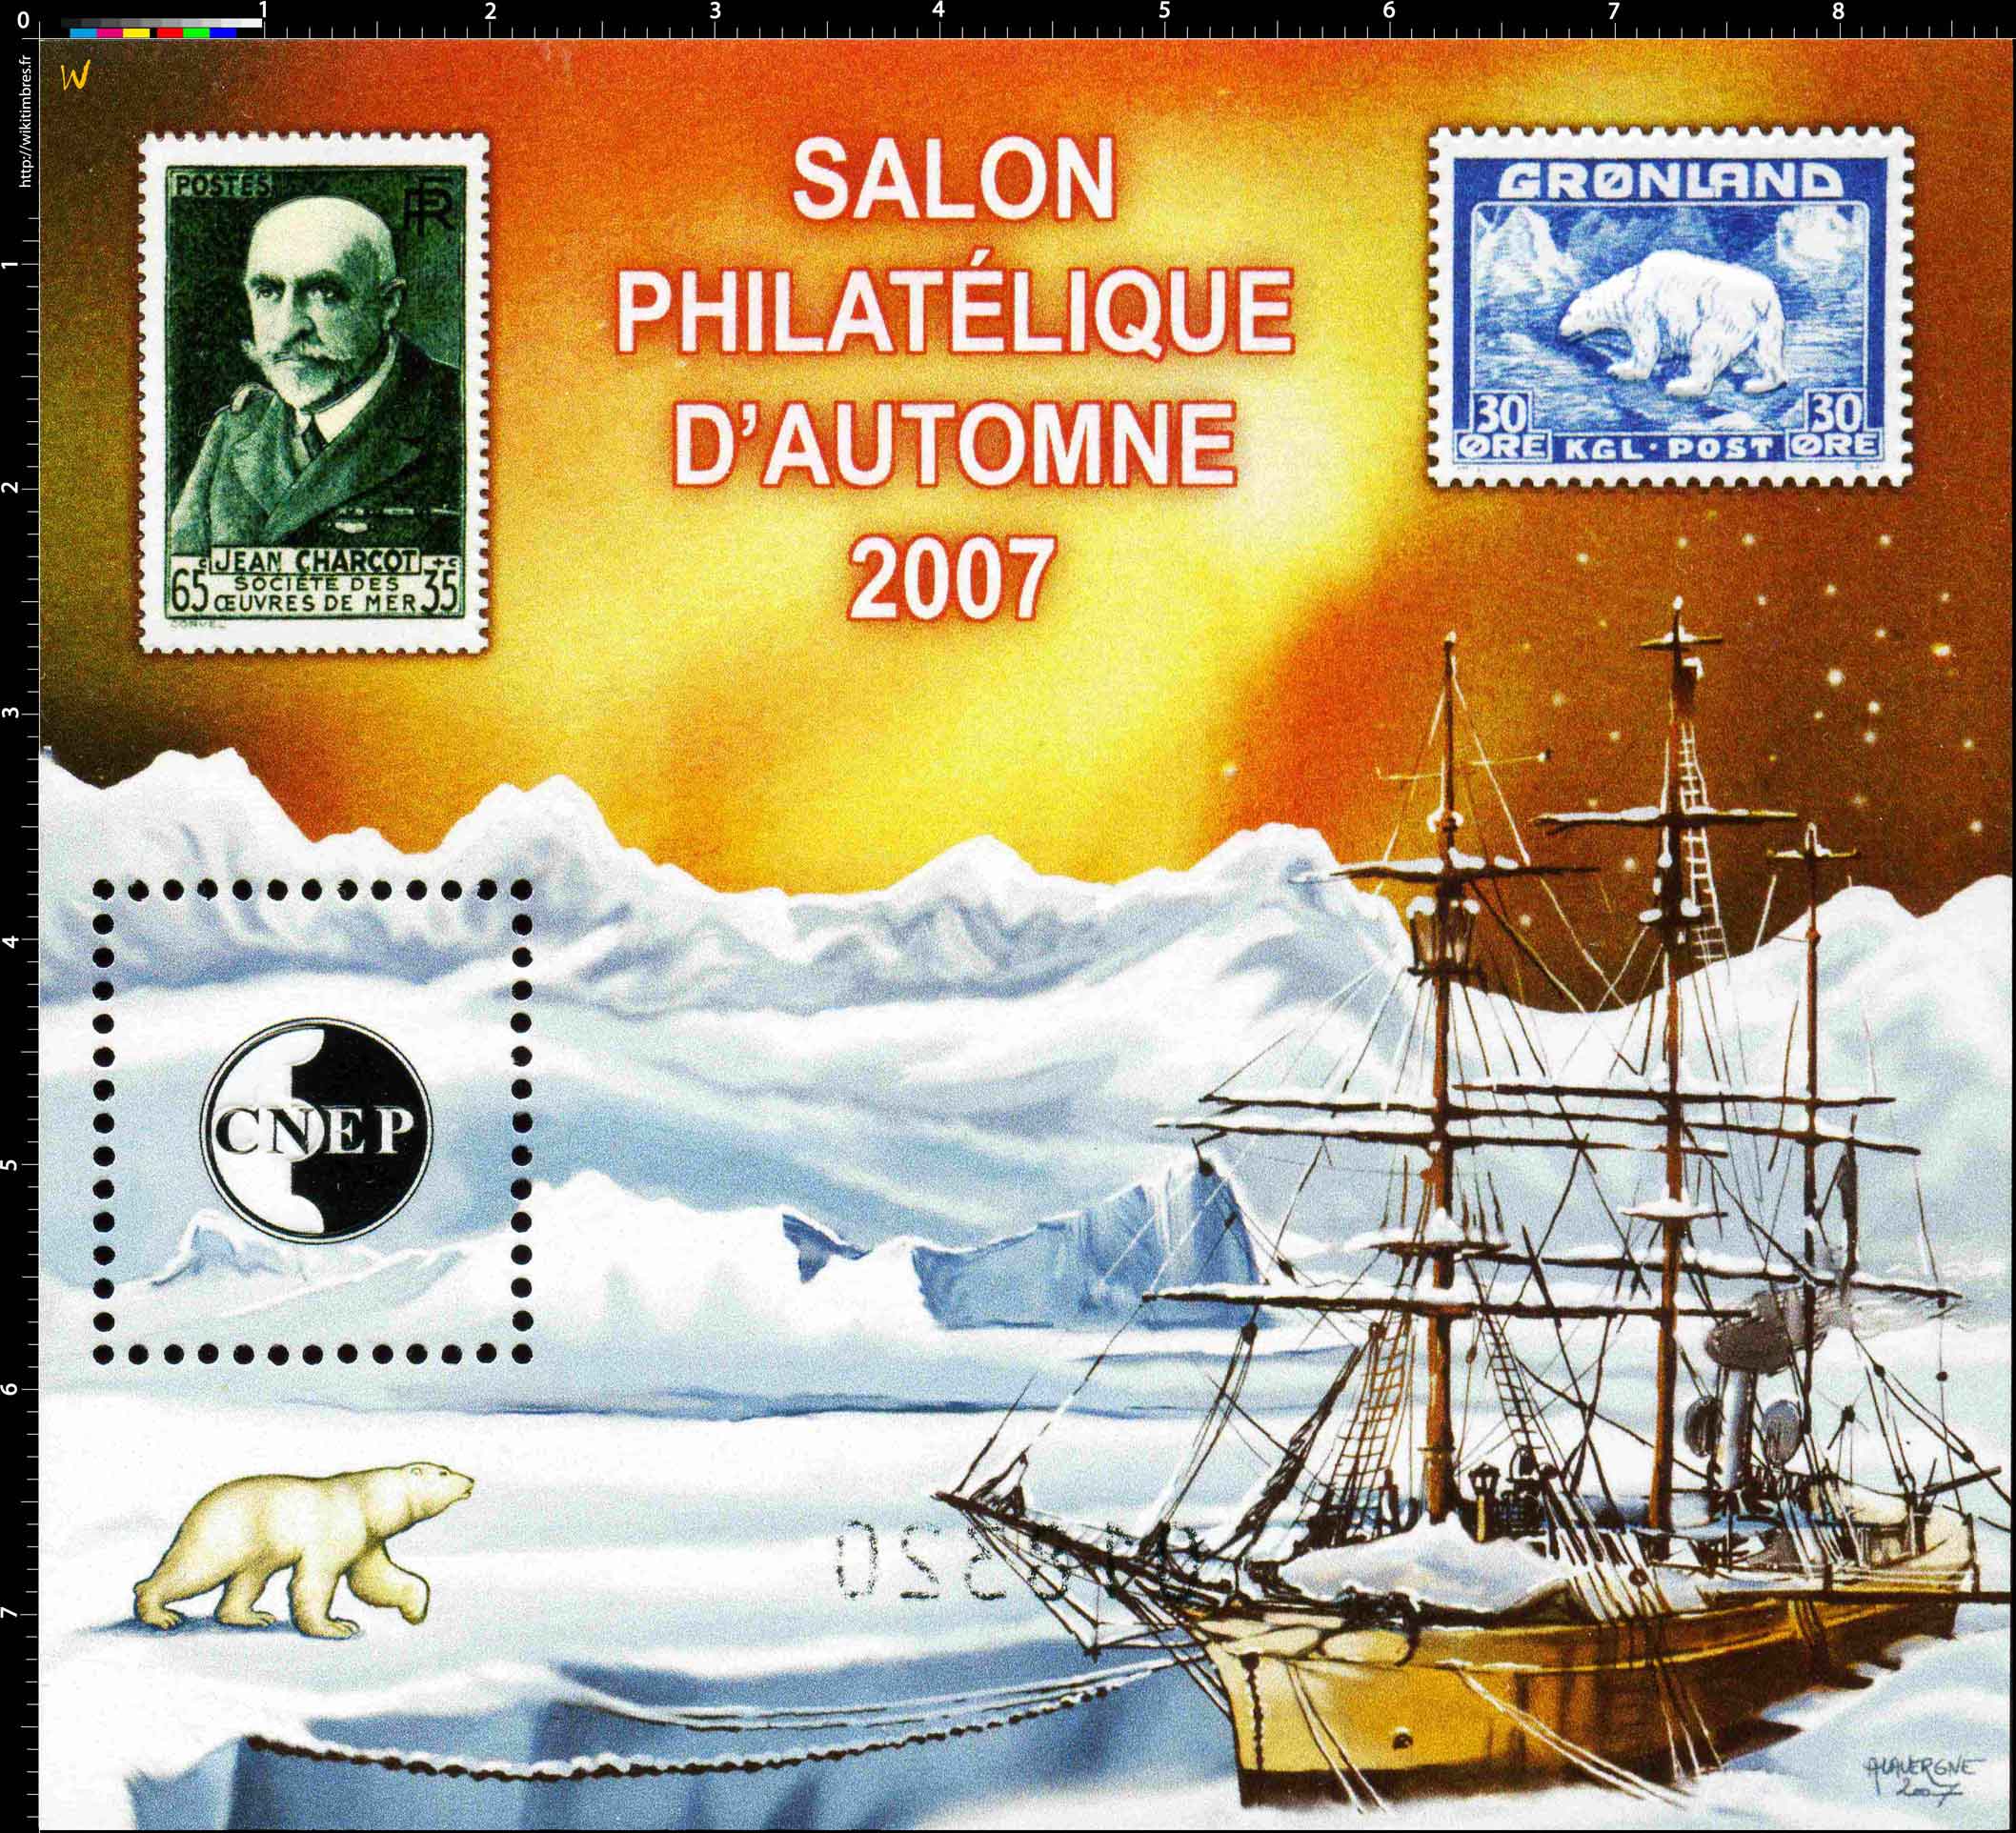 2007 Salon philatélique d'automne CNEP